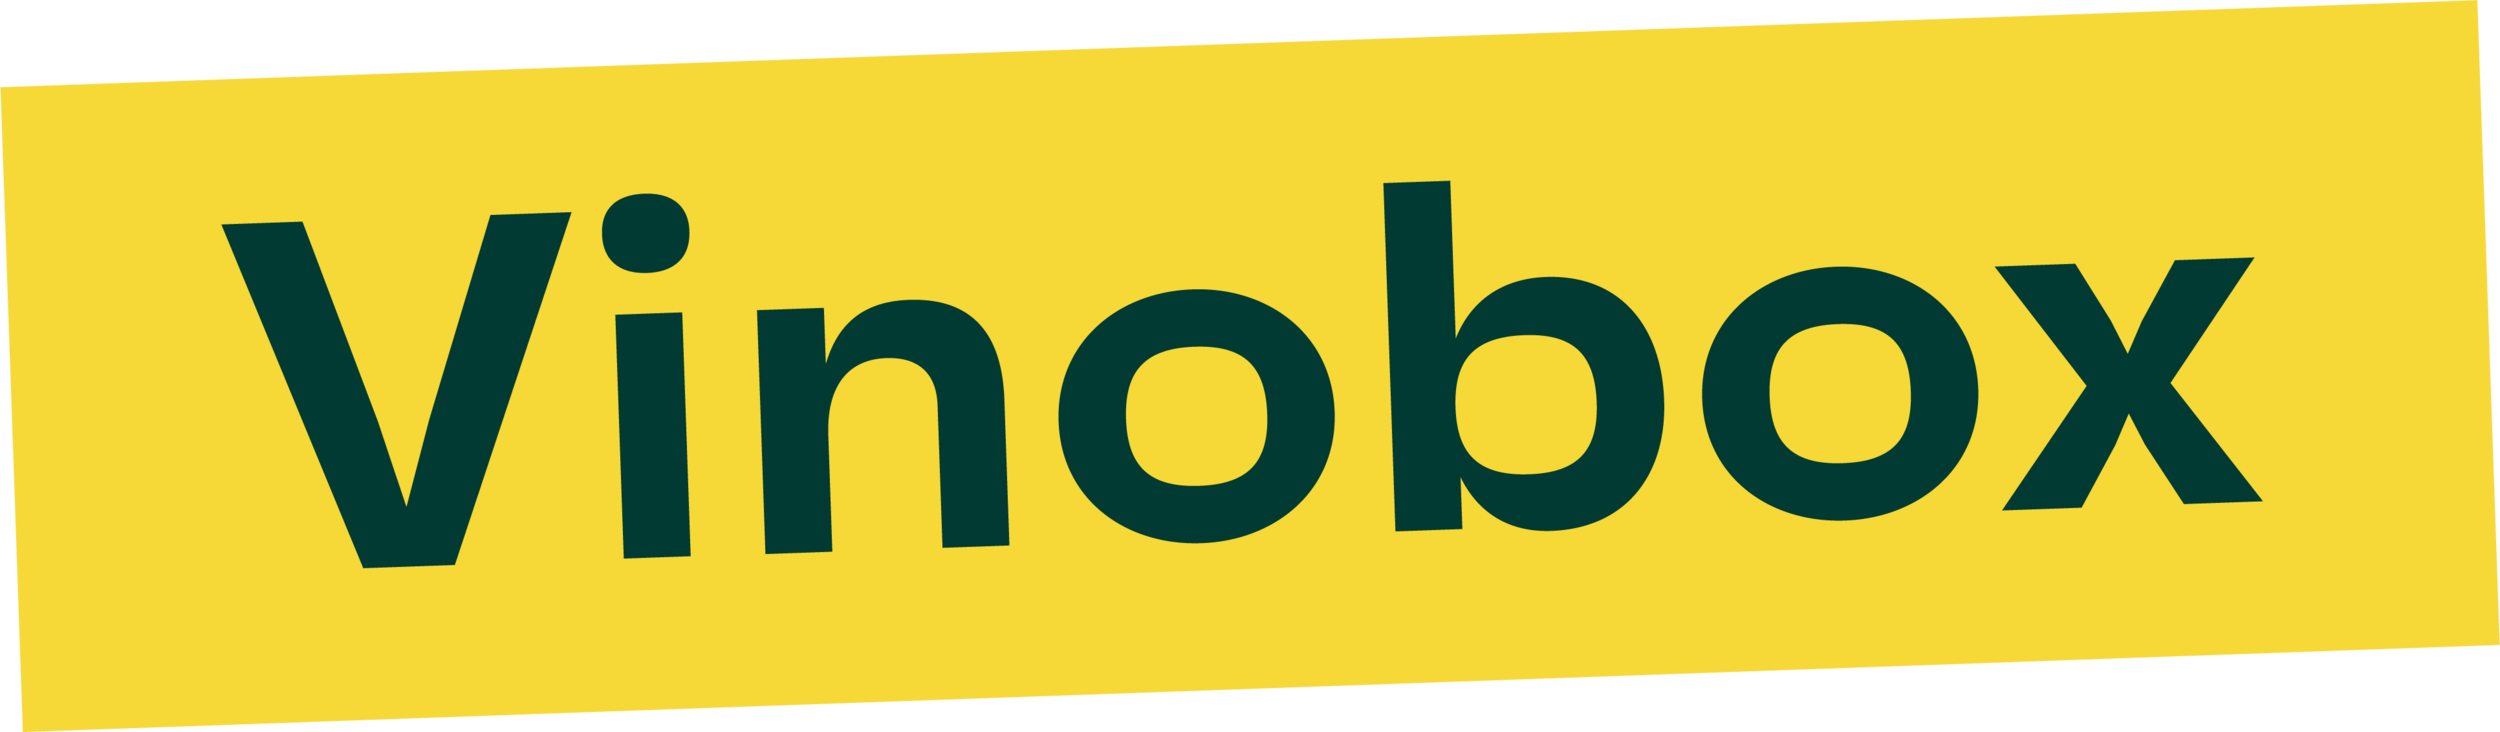 Vinobox_Logo_RGB.png